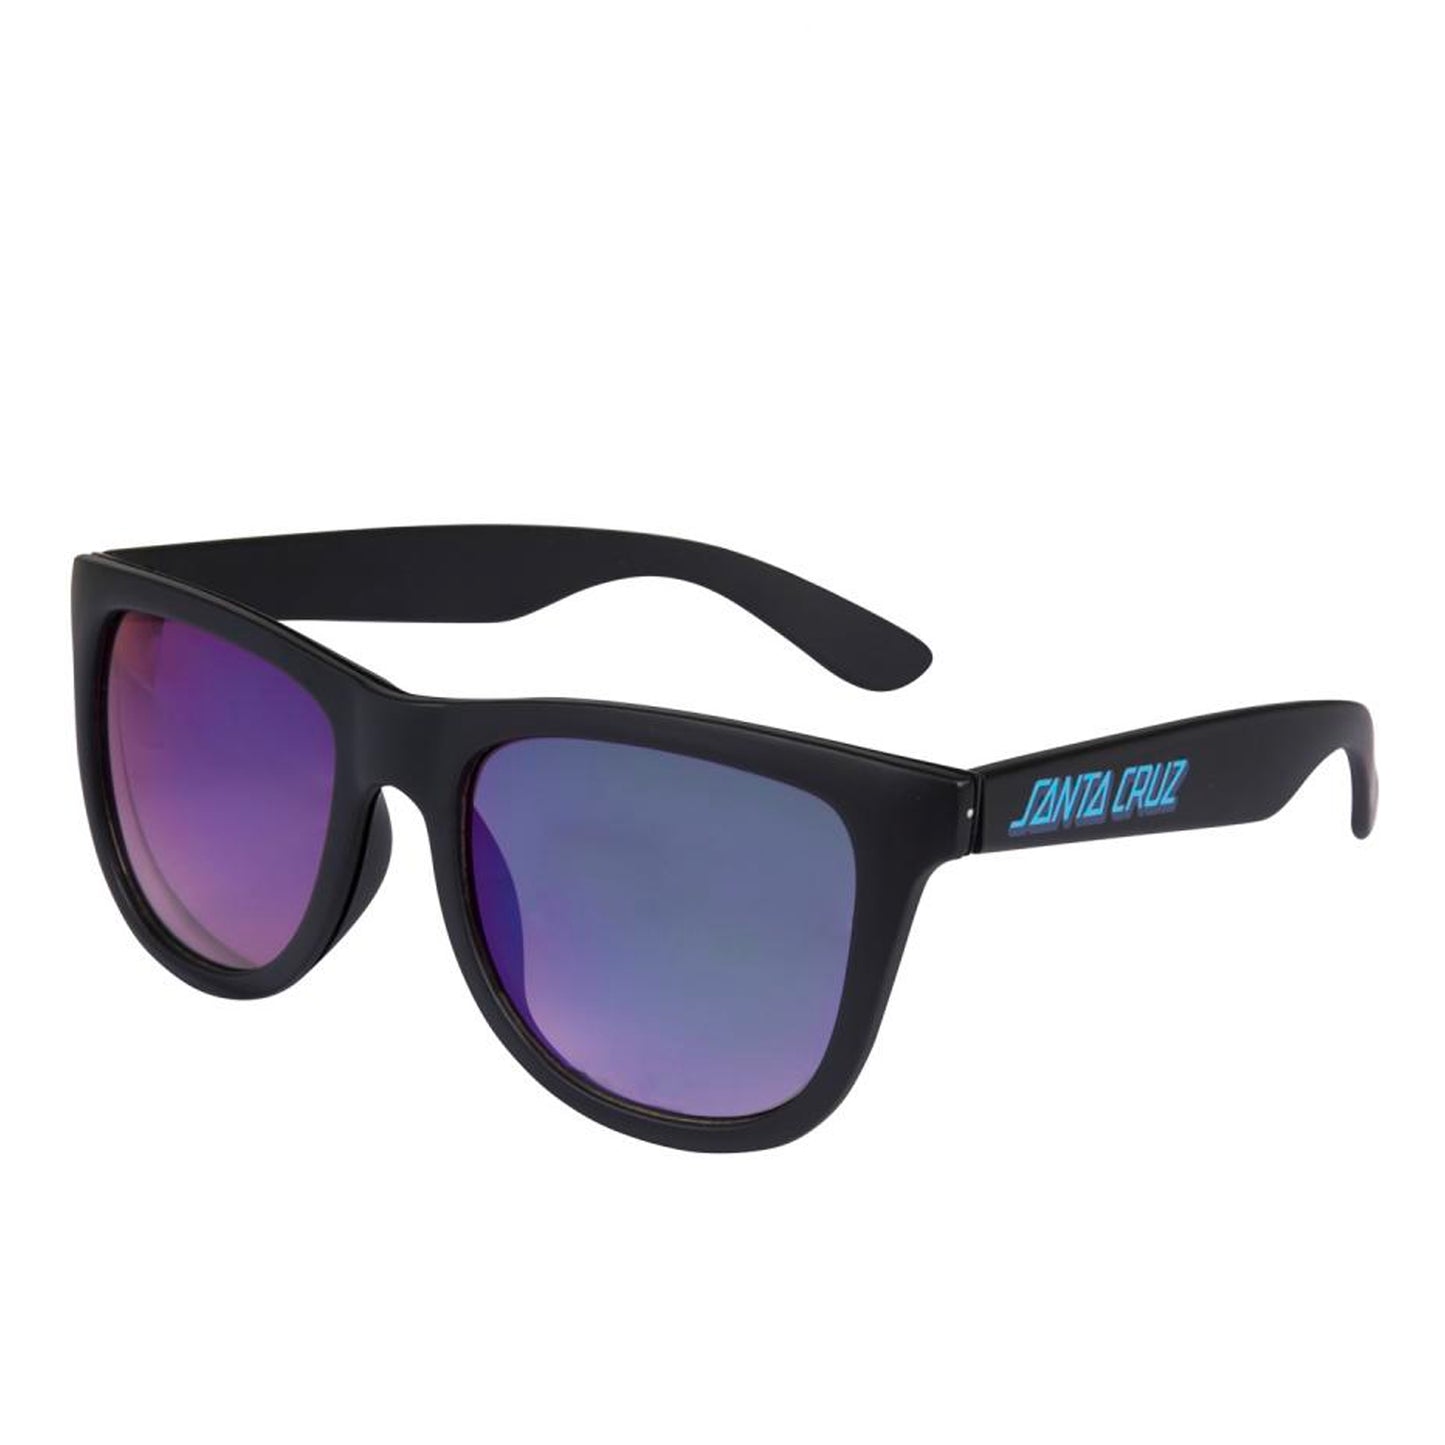 Santa Cruz Inferno Strip Sunglasses - Black / Black - Prime Delux Store